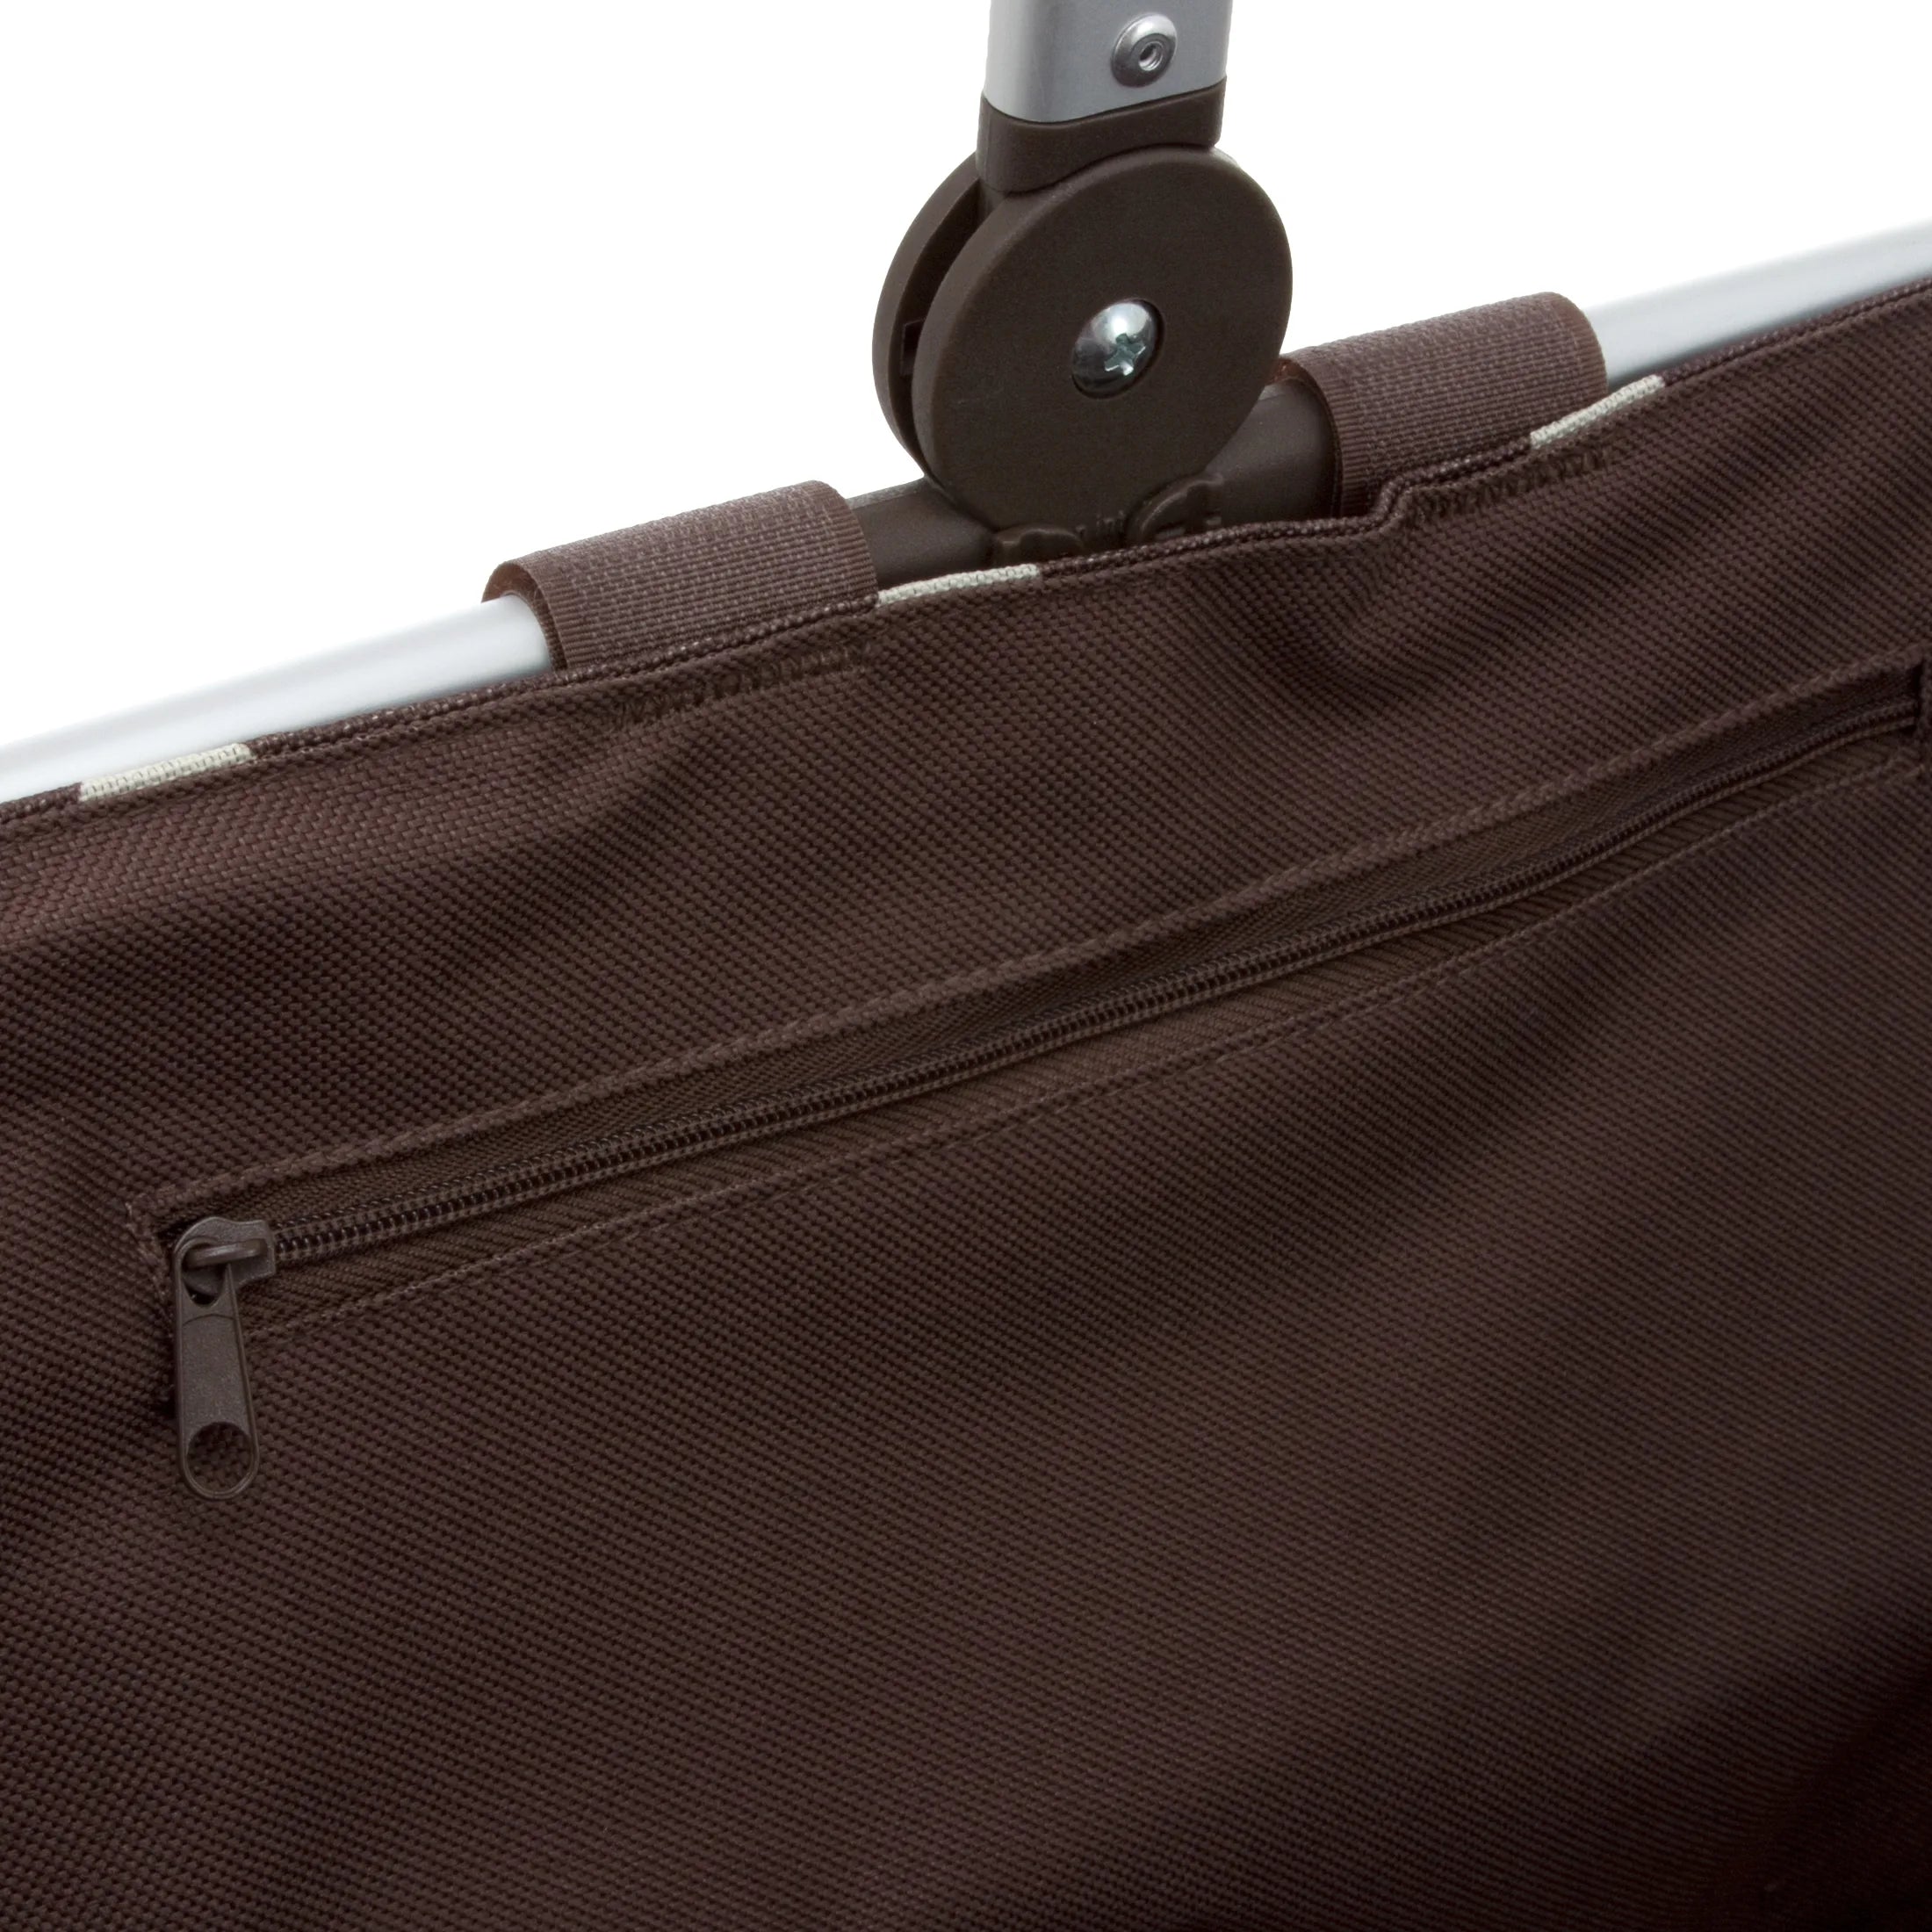 Reisenthel Shopping Carrybag Einkaufskorb 48 cm - Frame Bronze/Black